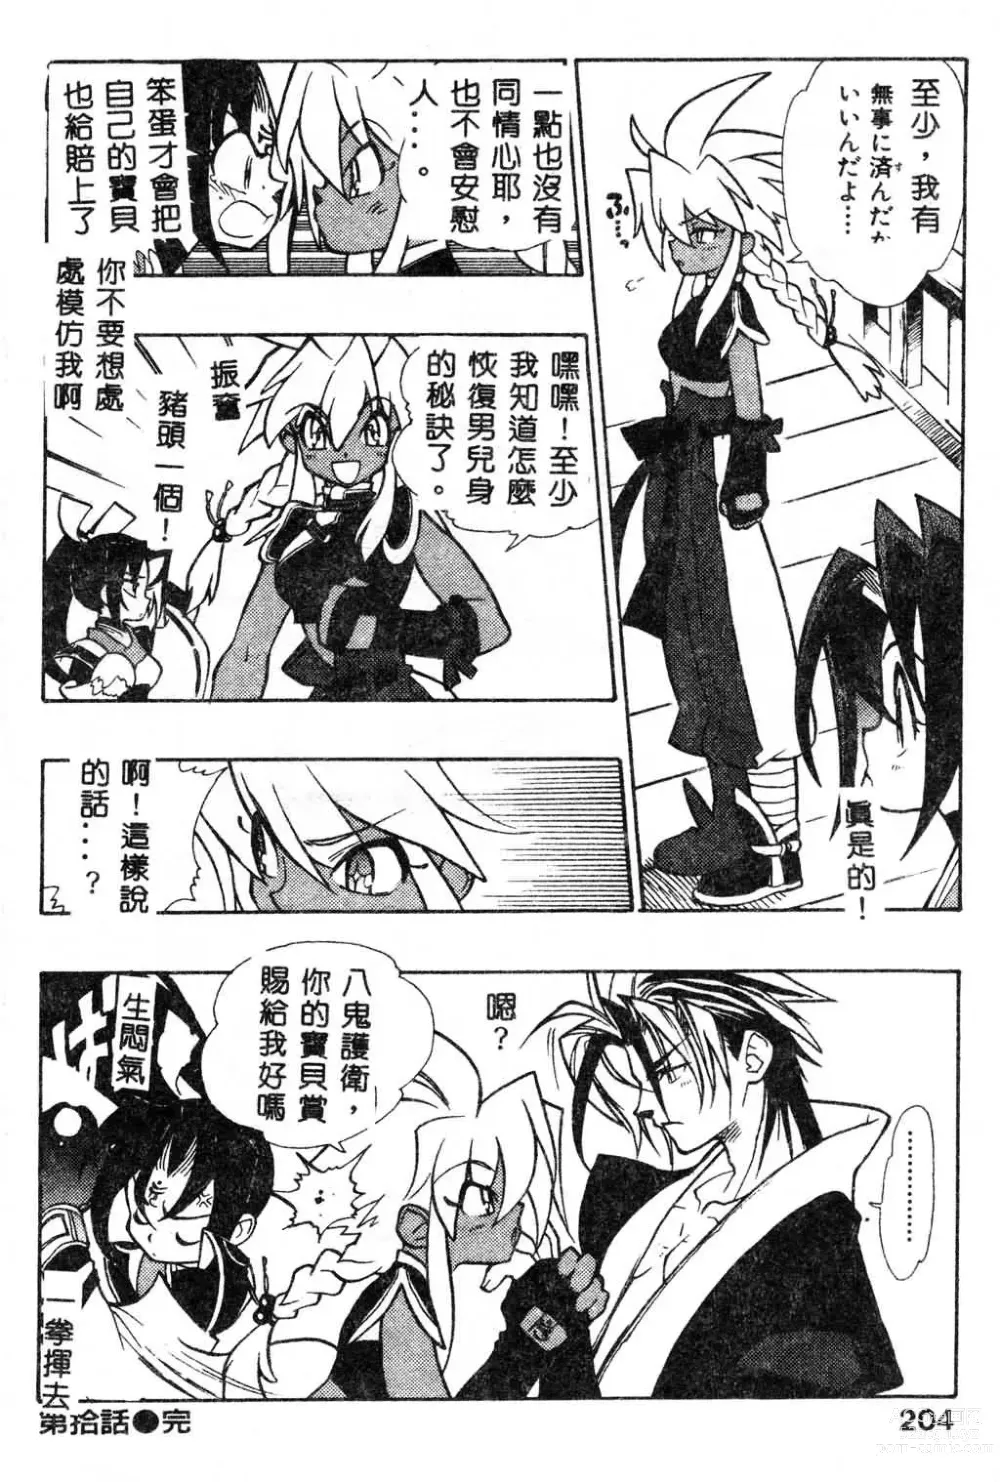 Page 206 of manga Fuusatsu Hyakke